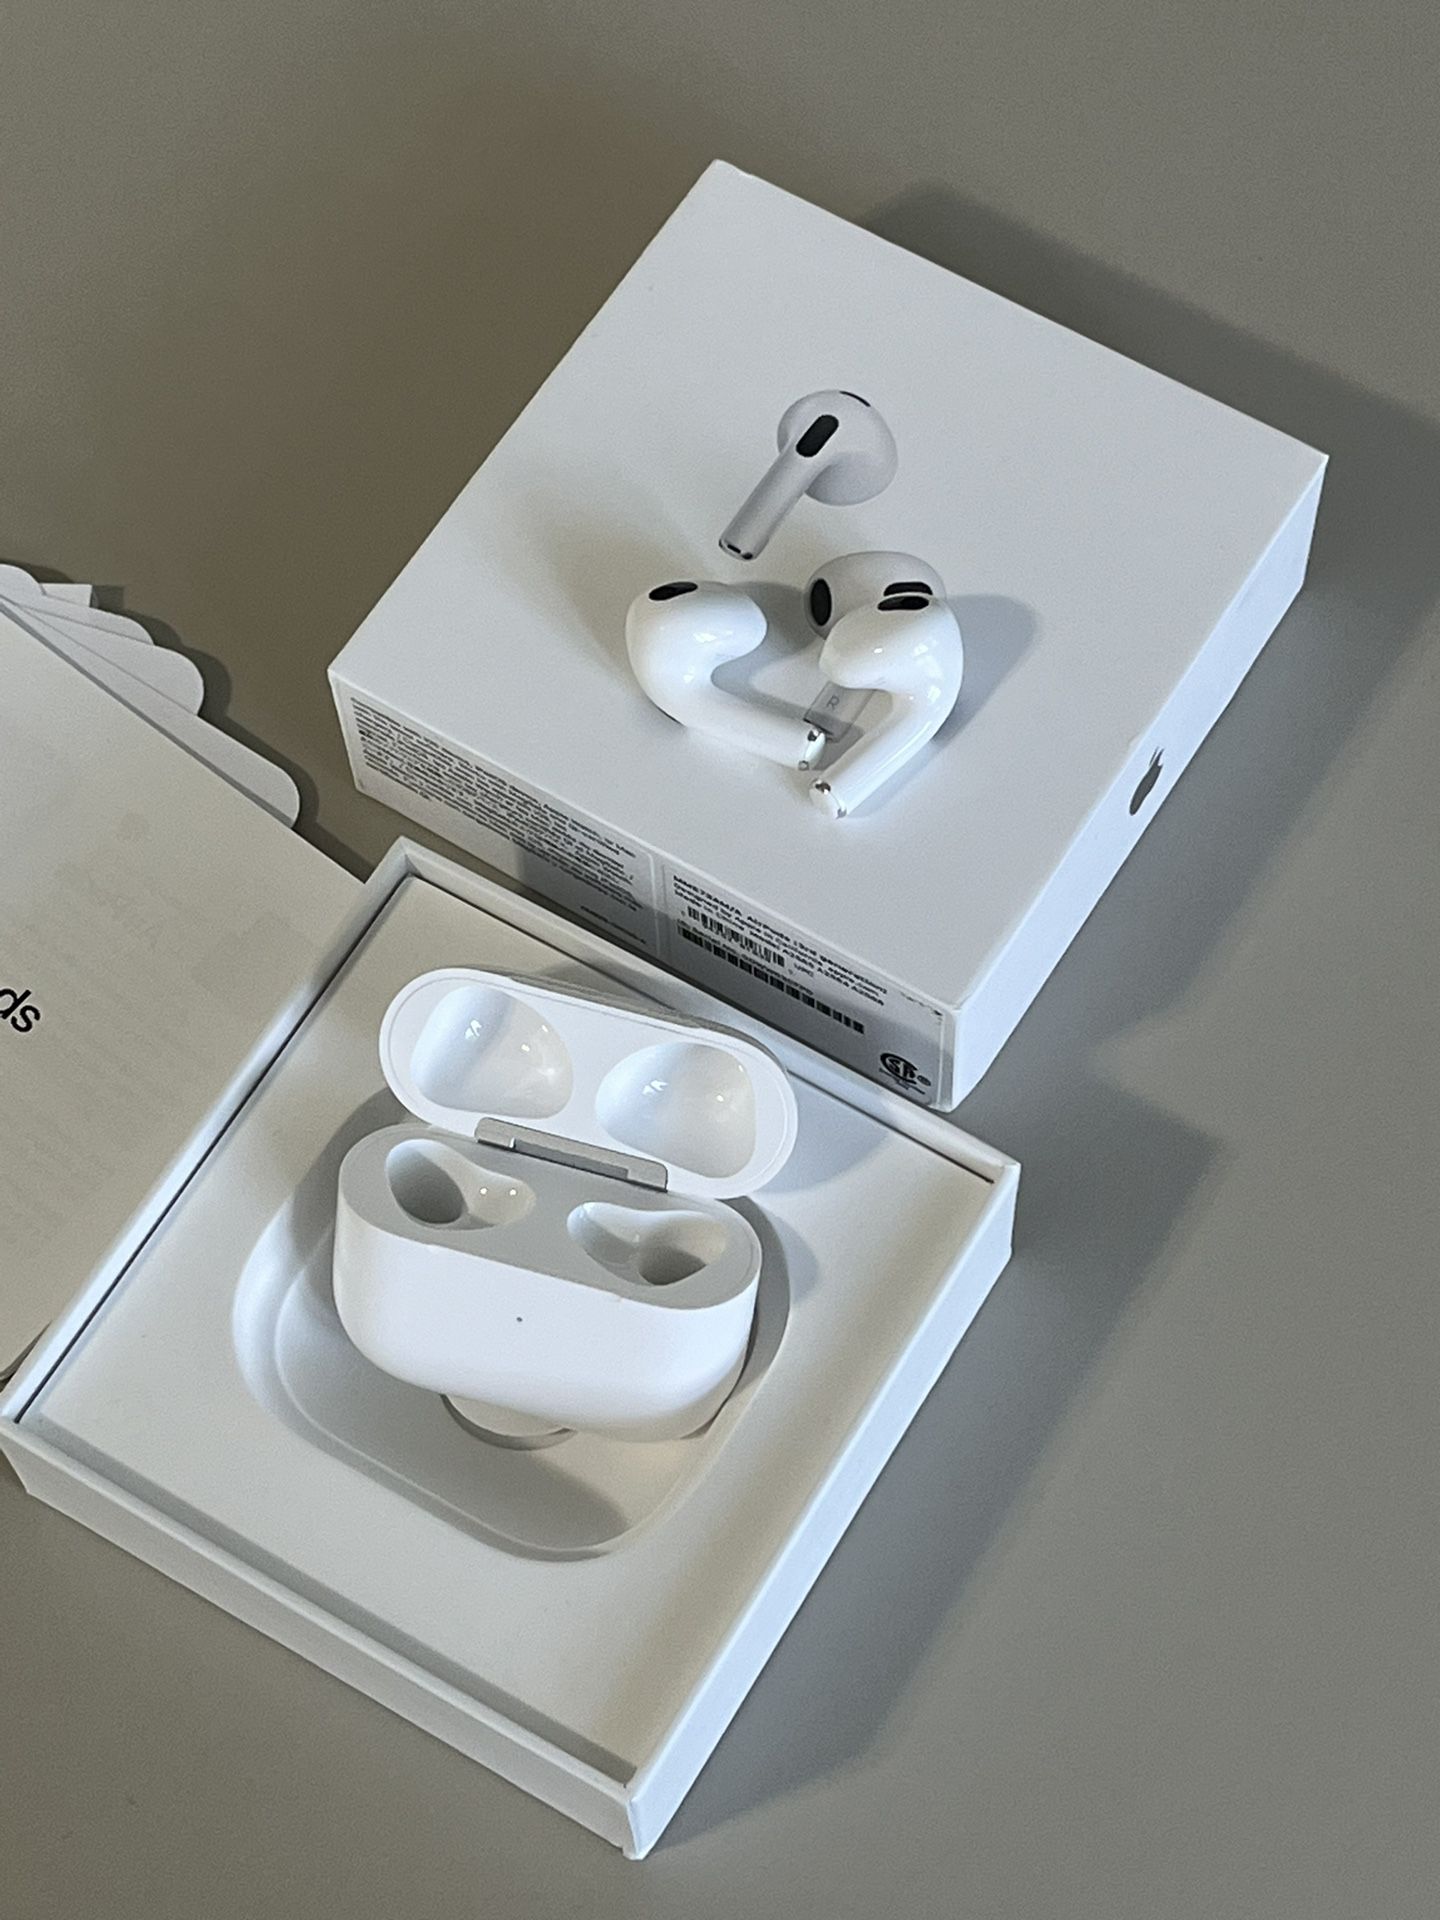 Apple AirPods 3rd Generation Wireless In-Ear Headset